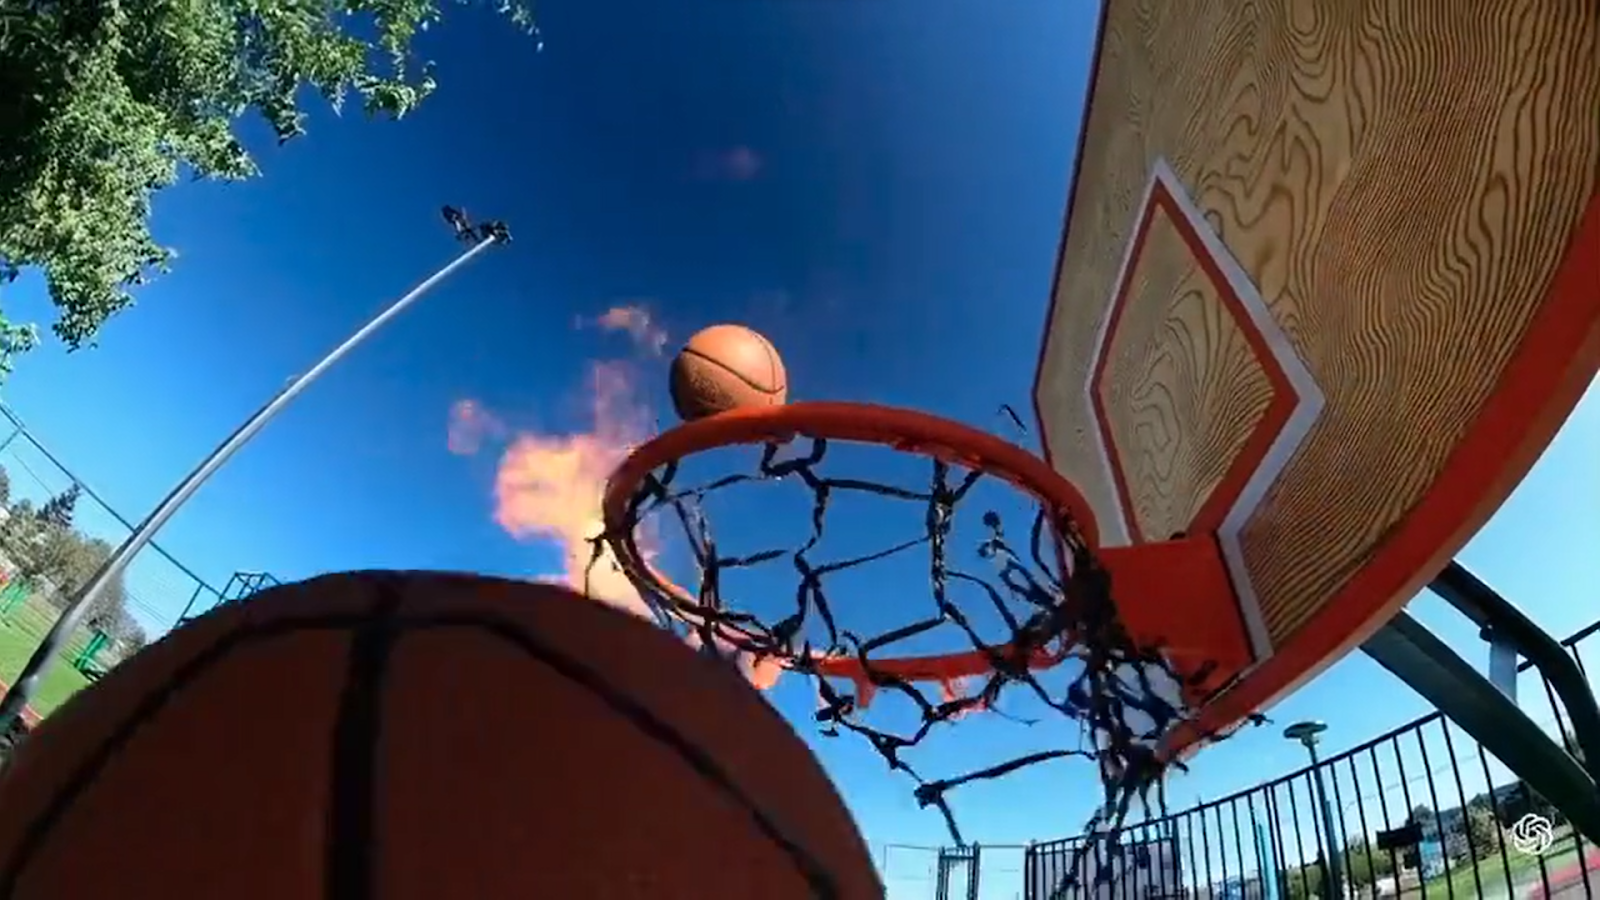 En basketkorg med en boll i luftenBeskrivning genereras automatiskt